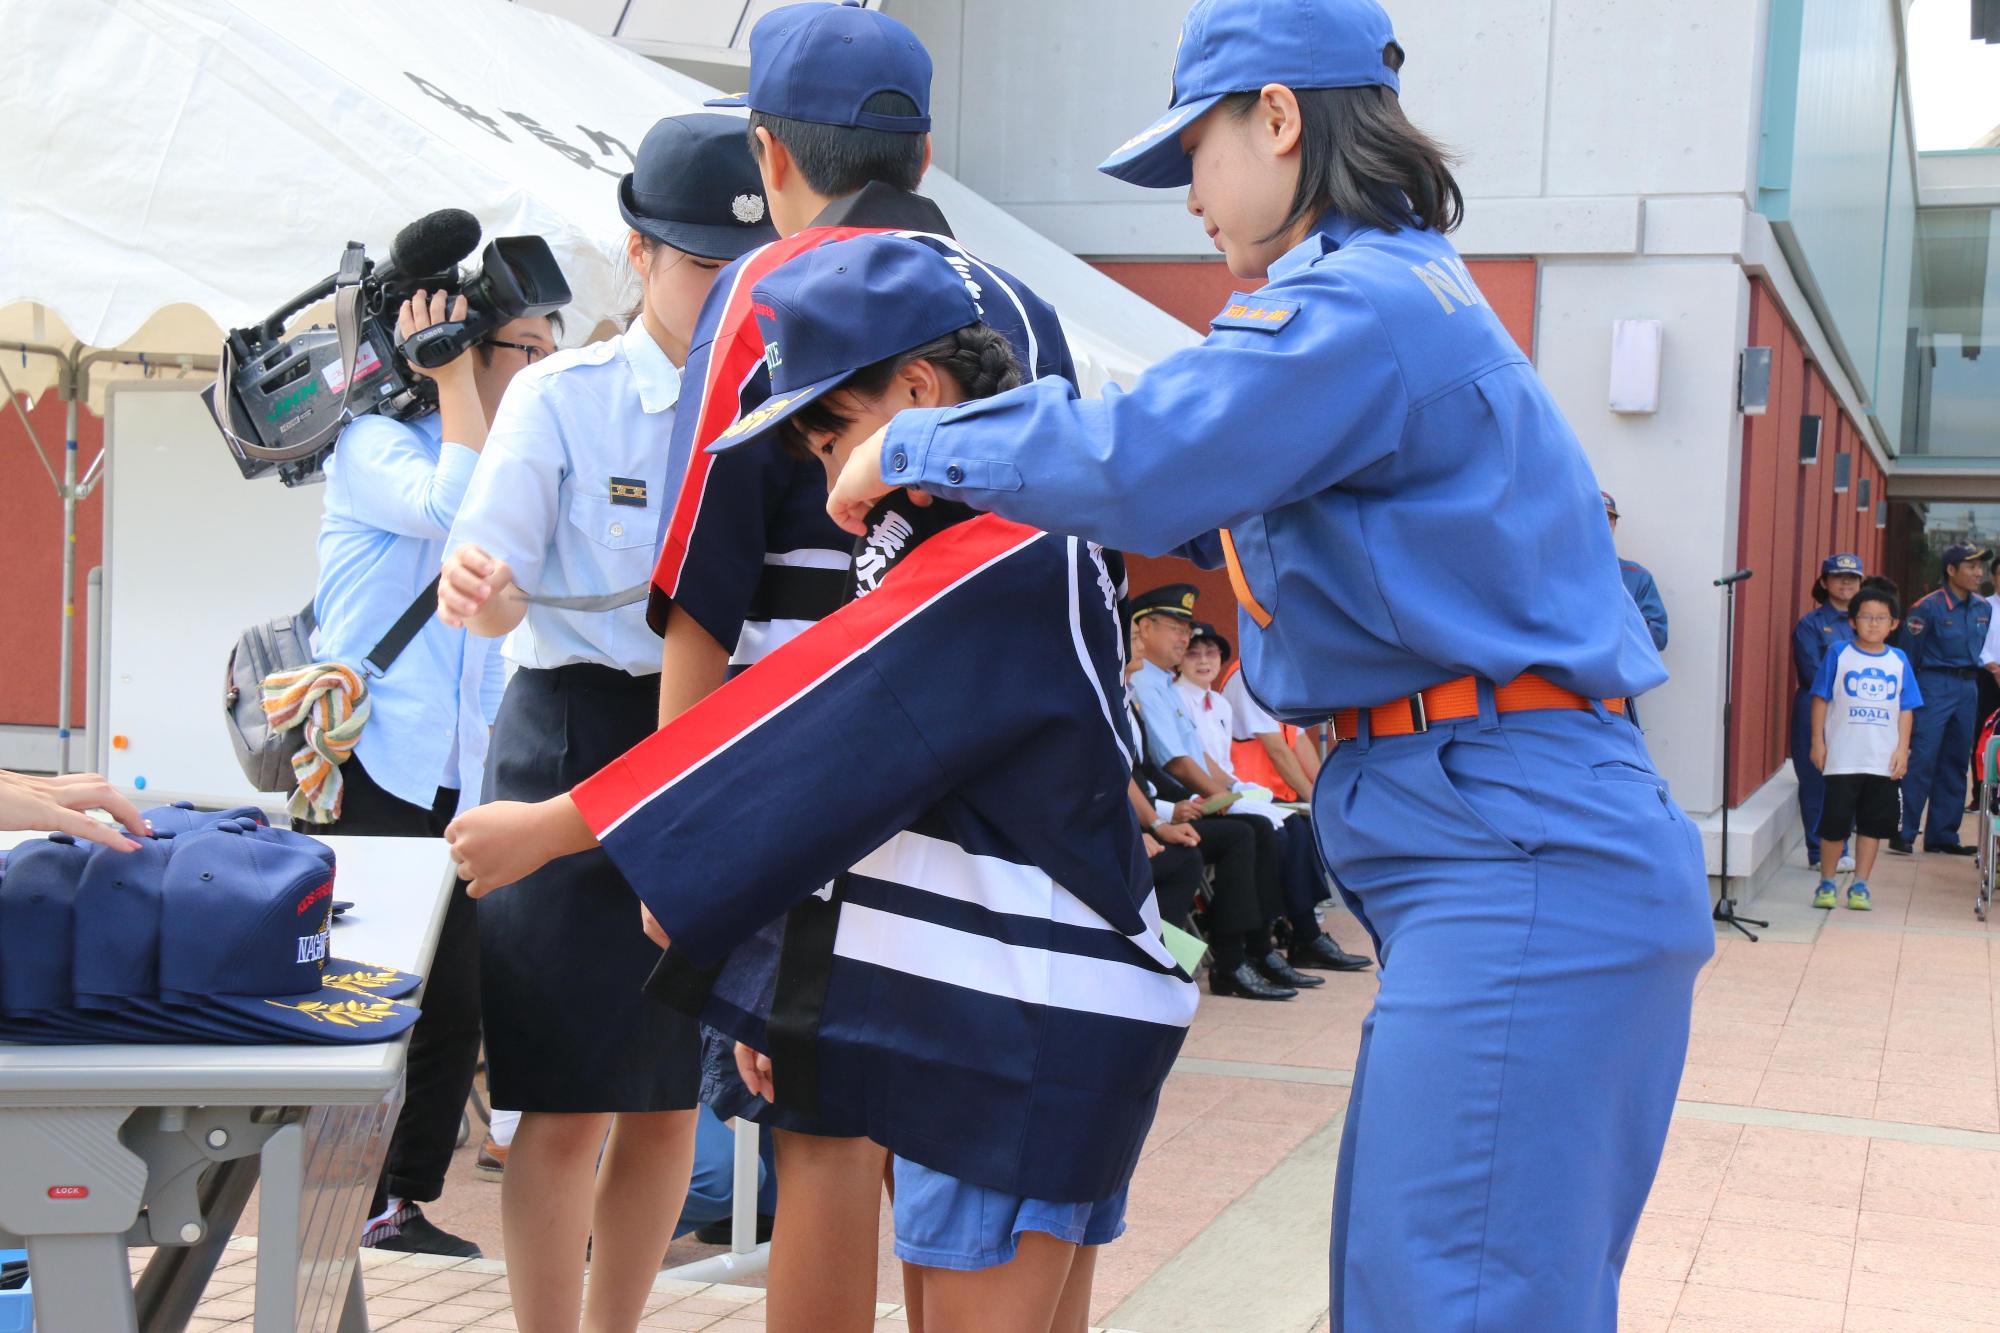 青い制服を着た女性から帽子と法被を着させてもらっている女の子の写真